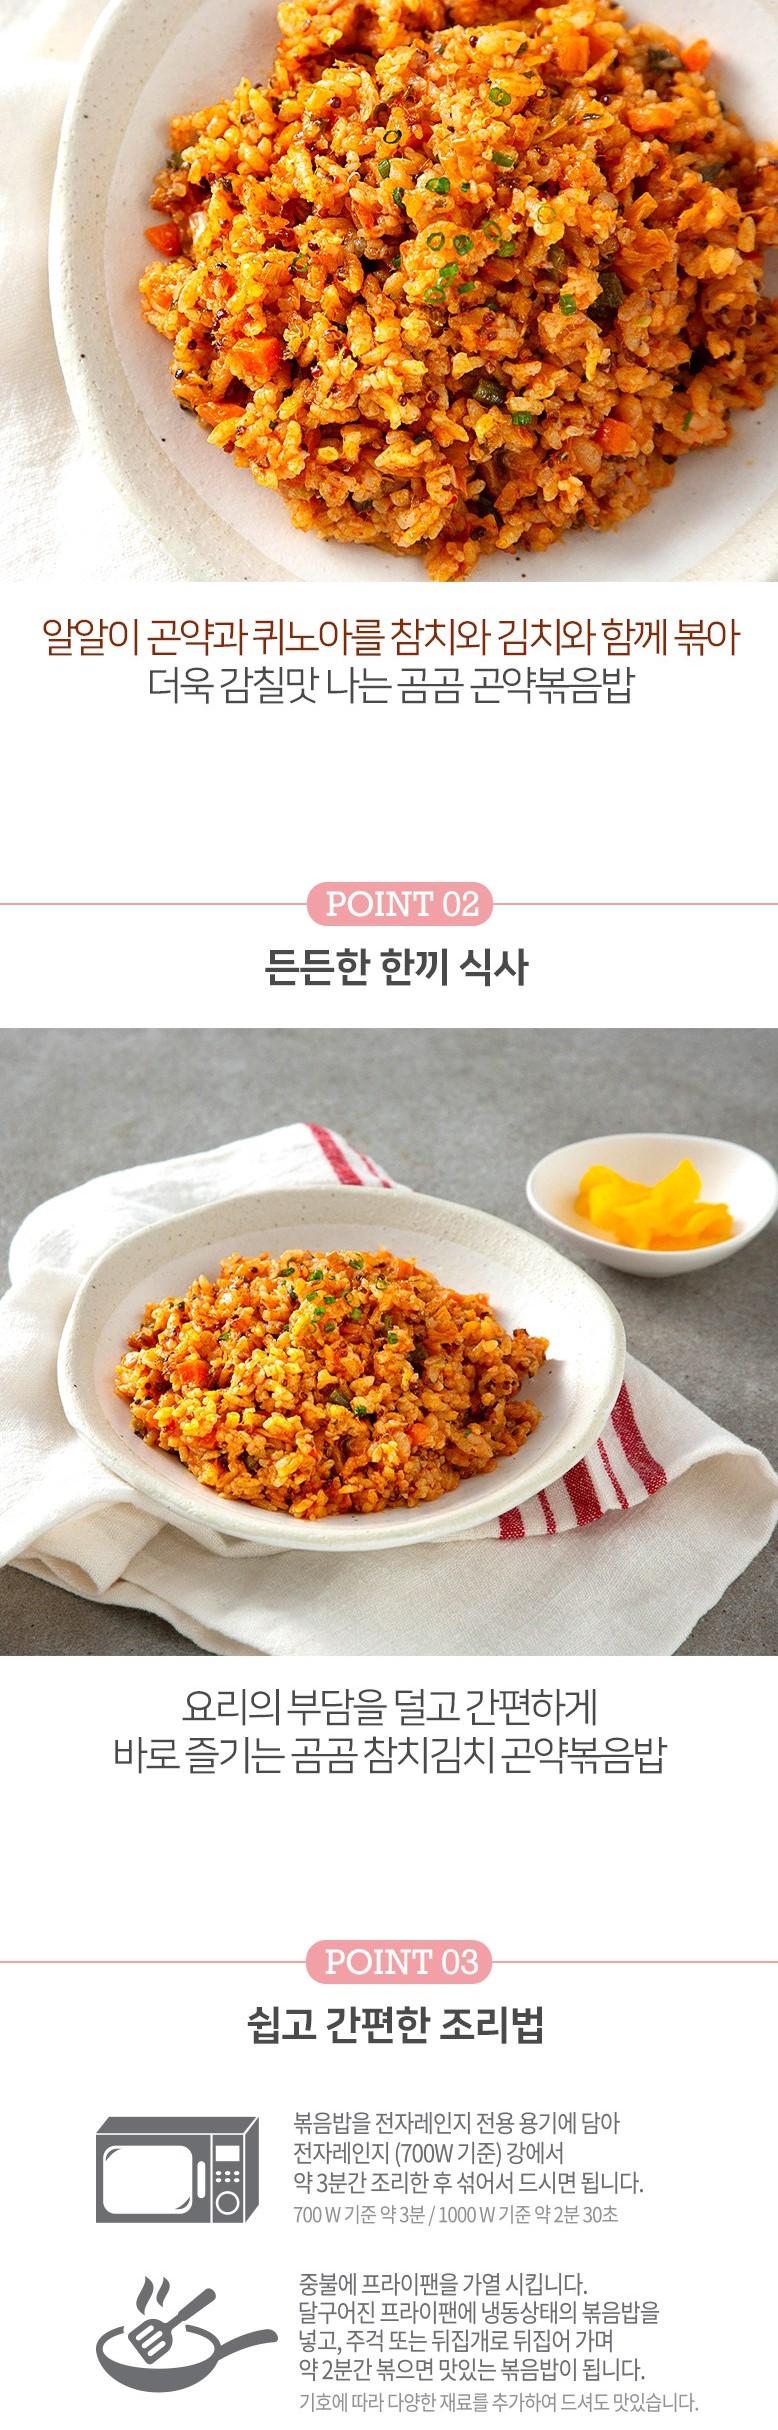 韓國食品-[곰곰] 곤약 볶음밥 (참치김치) 200g